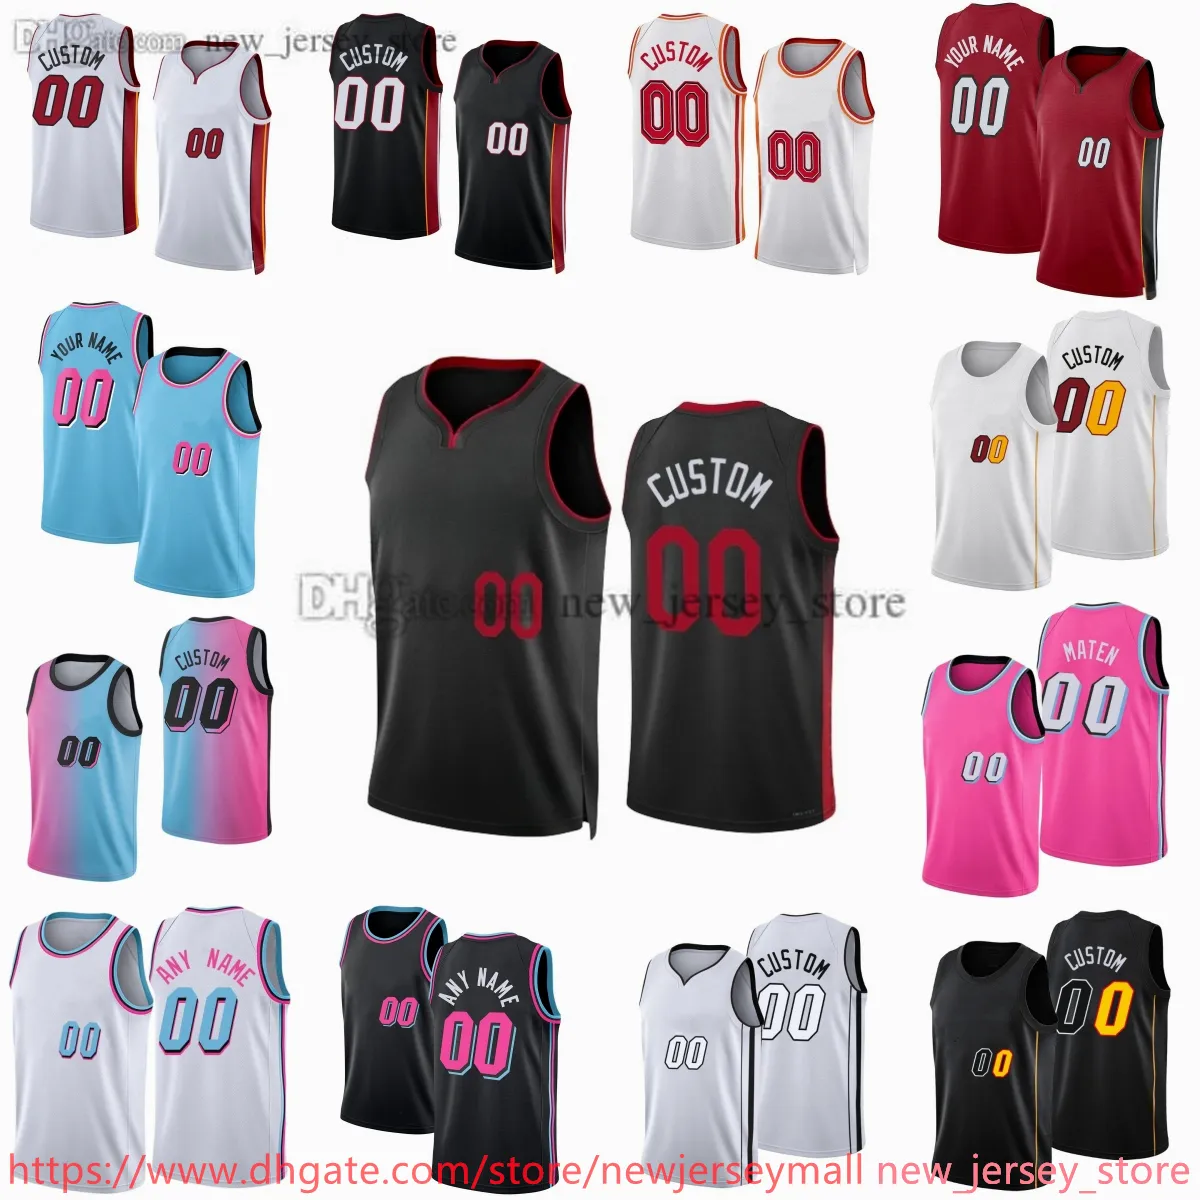 Anpassad 2023-24 Ny säsong tryckt basket 22Jimmybutler-tröjor svarta vita blå rosa tröjor. Meddela valfritt nummer och namn på beställningen